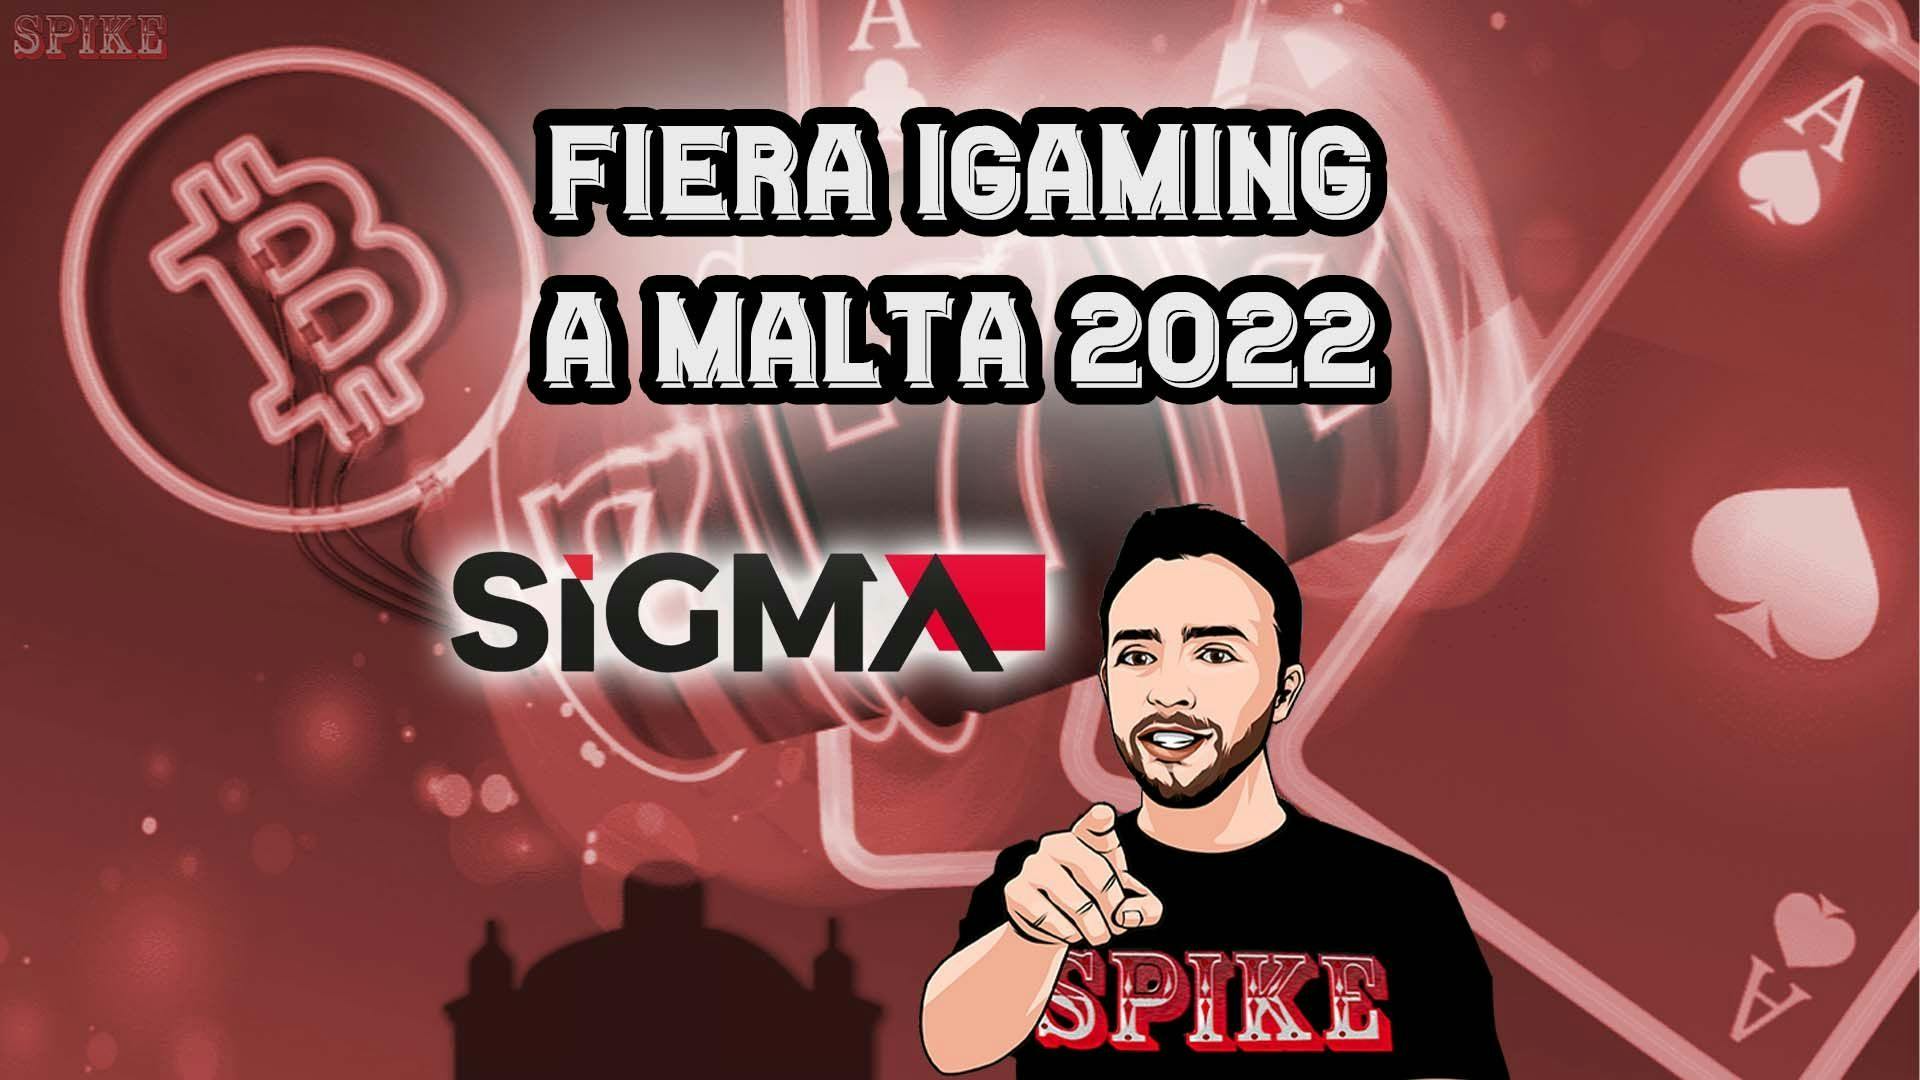 SiGMA Malta 2022